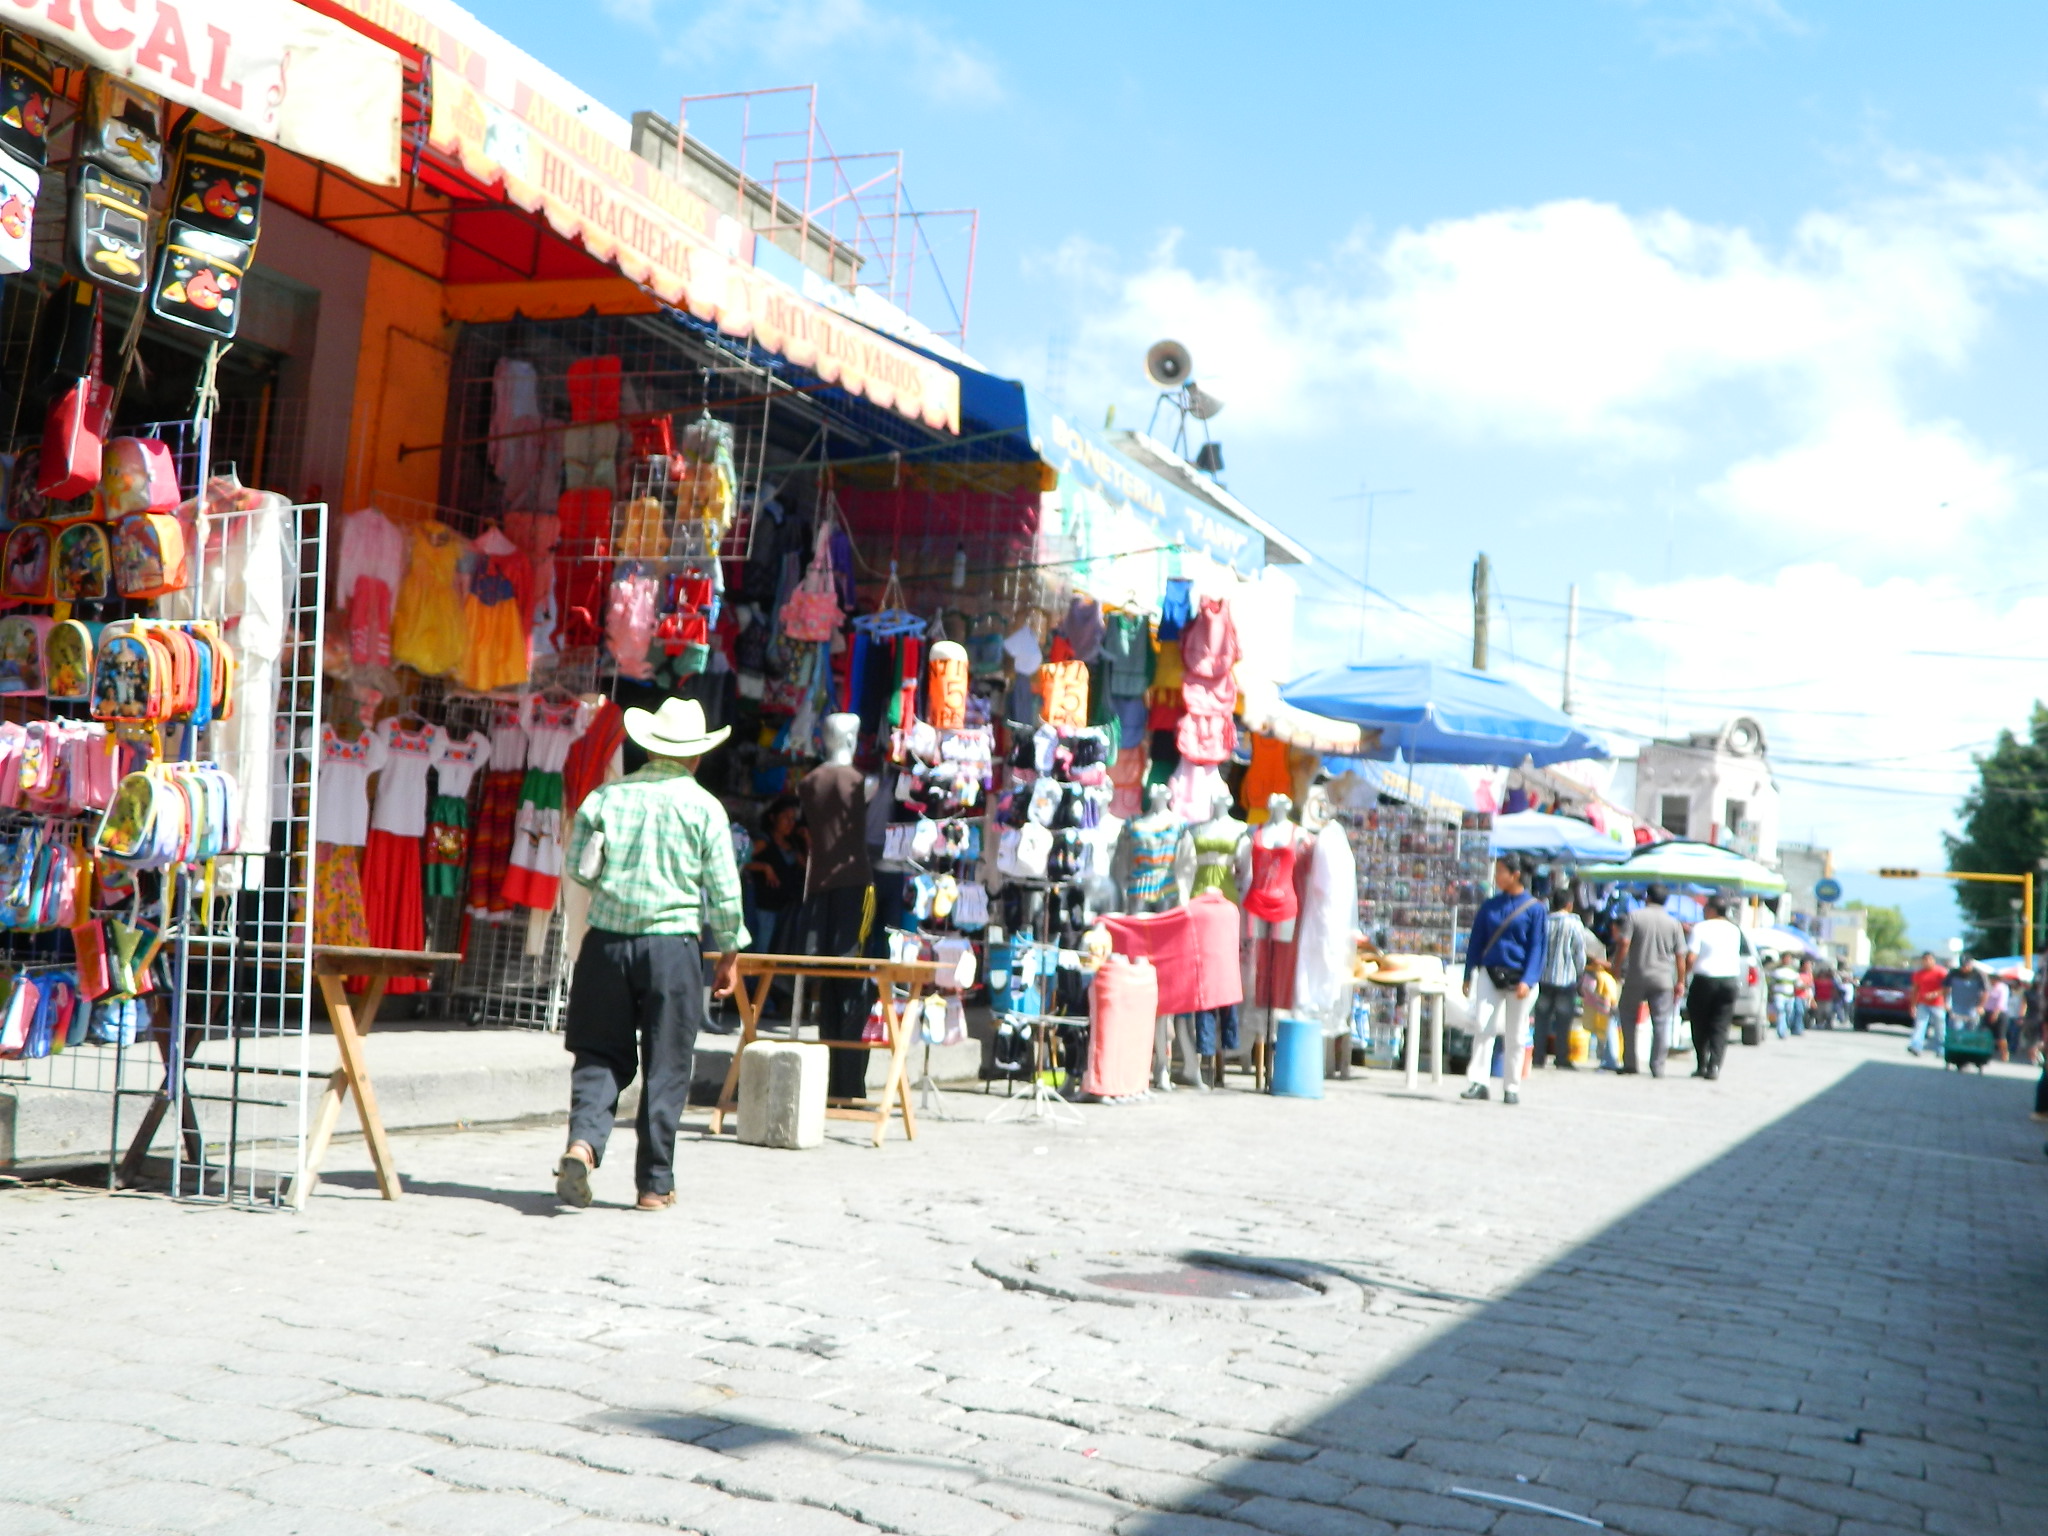 Adeudan comerciantes 2 mdp al Ayuntamiento de Tehuacán